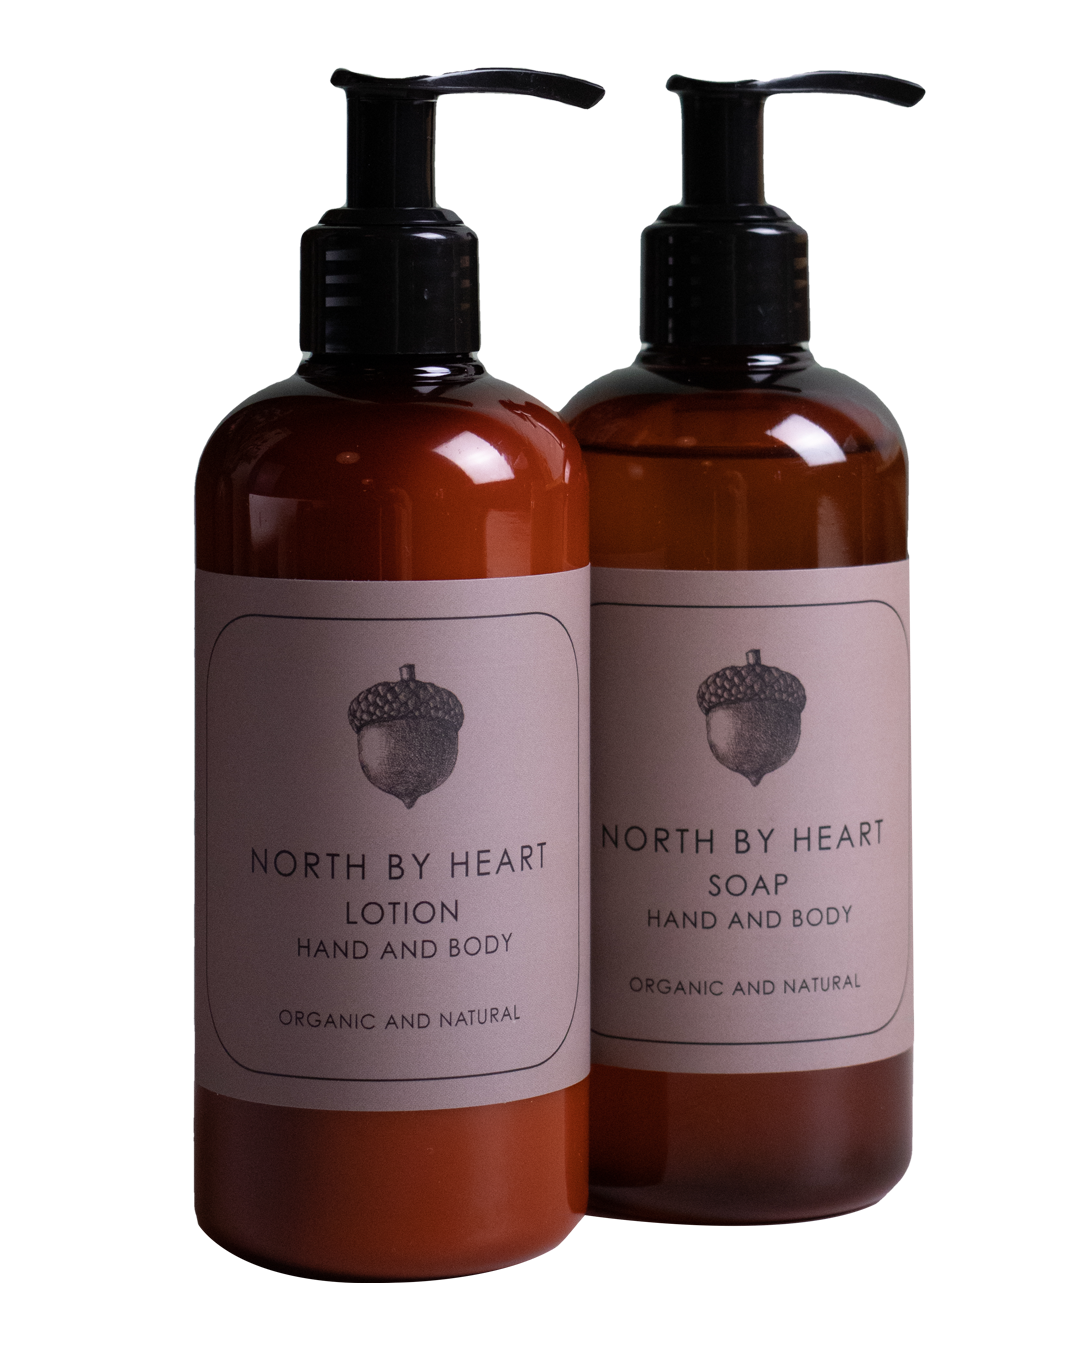 North by Heart økologisk og naturlig hånd og body soap, hånd og bodylotion, 250 ml.